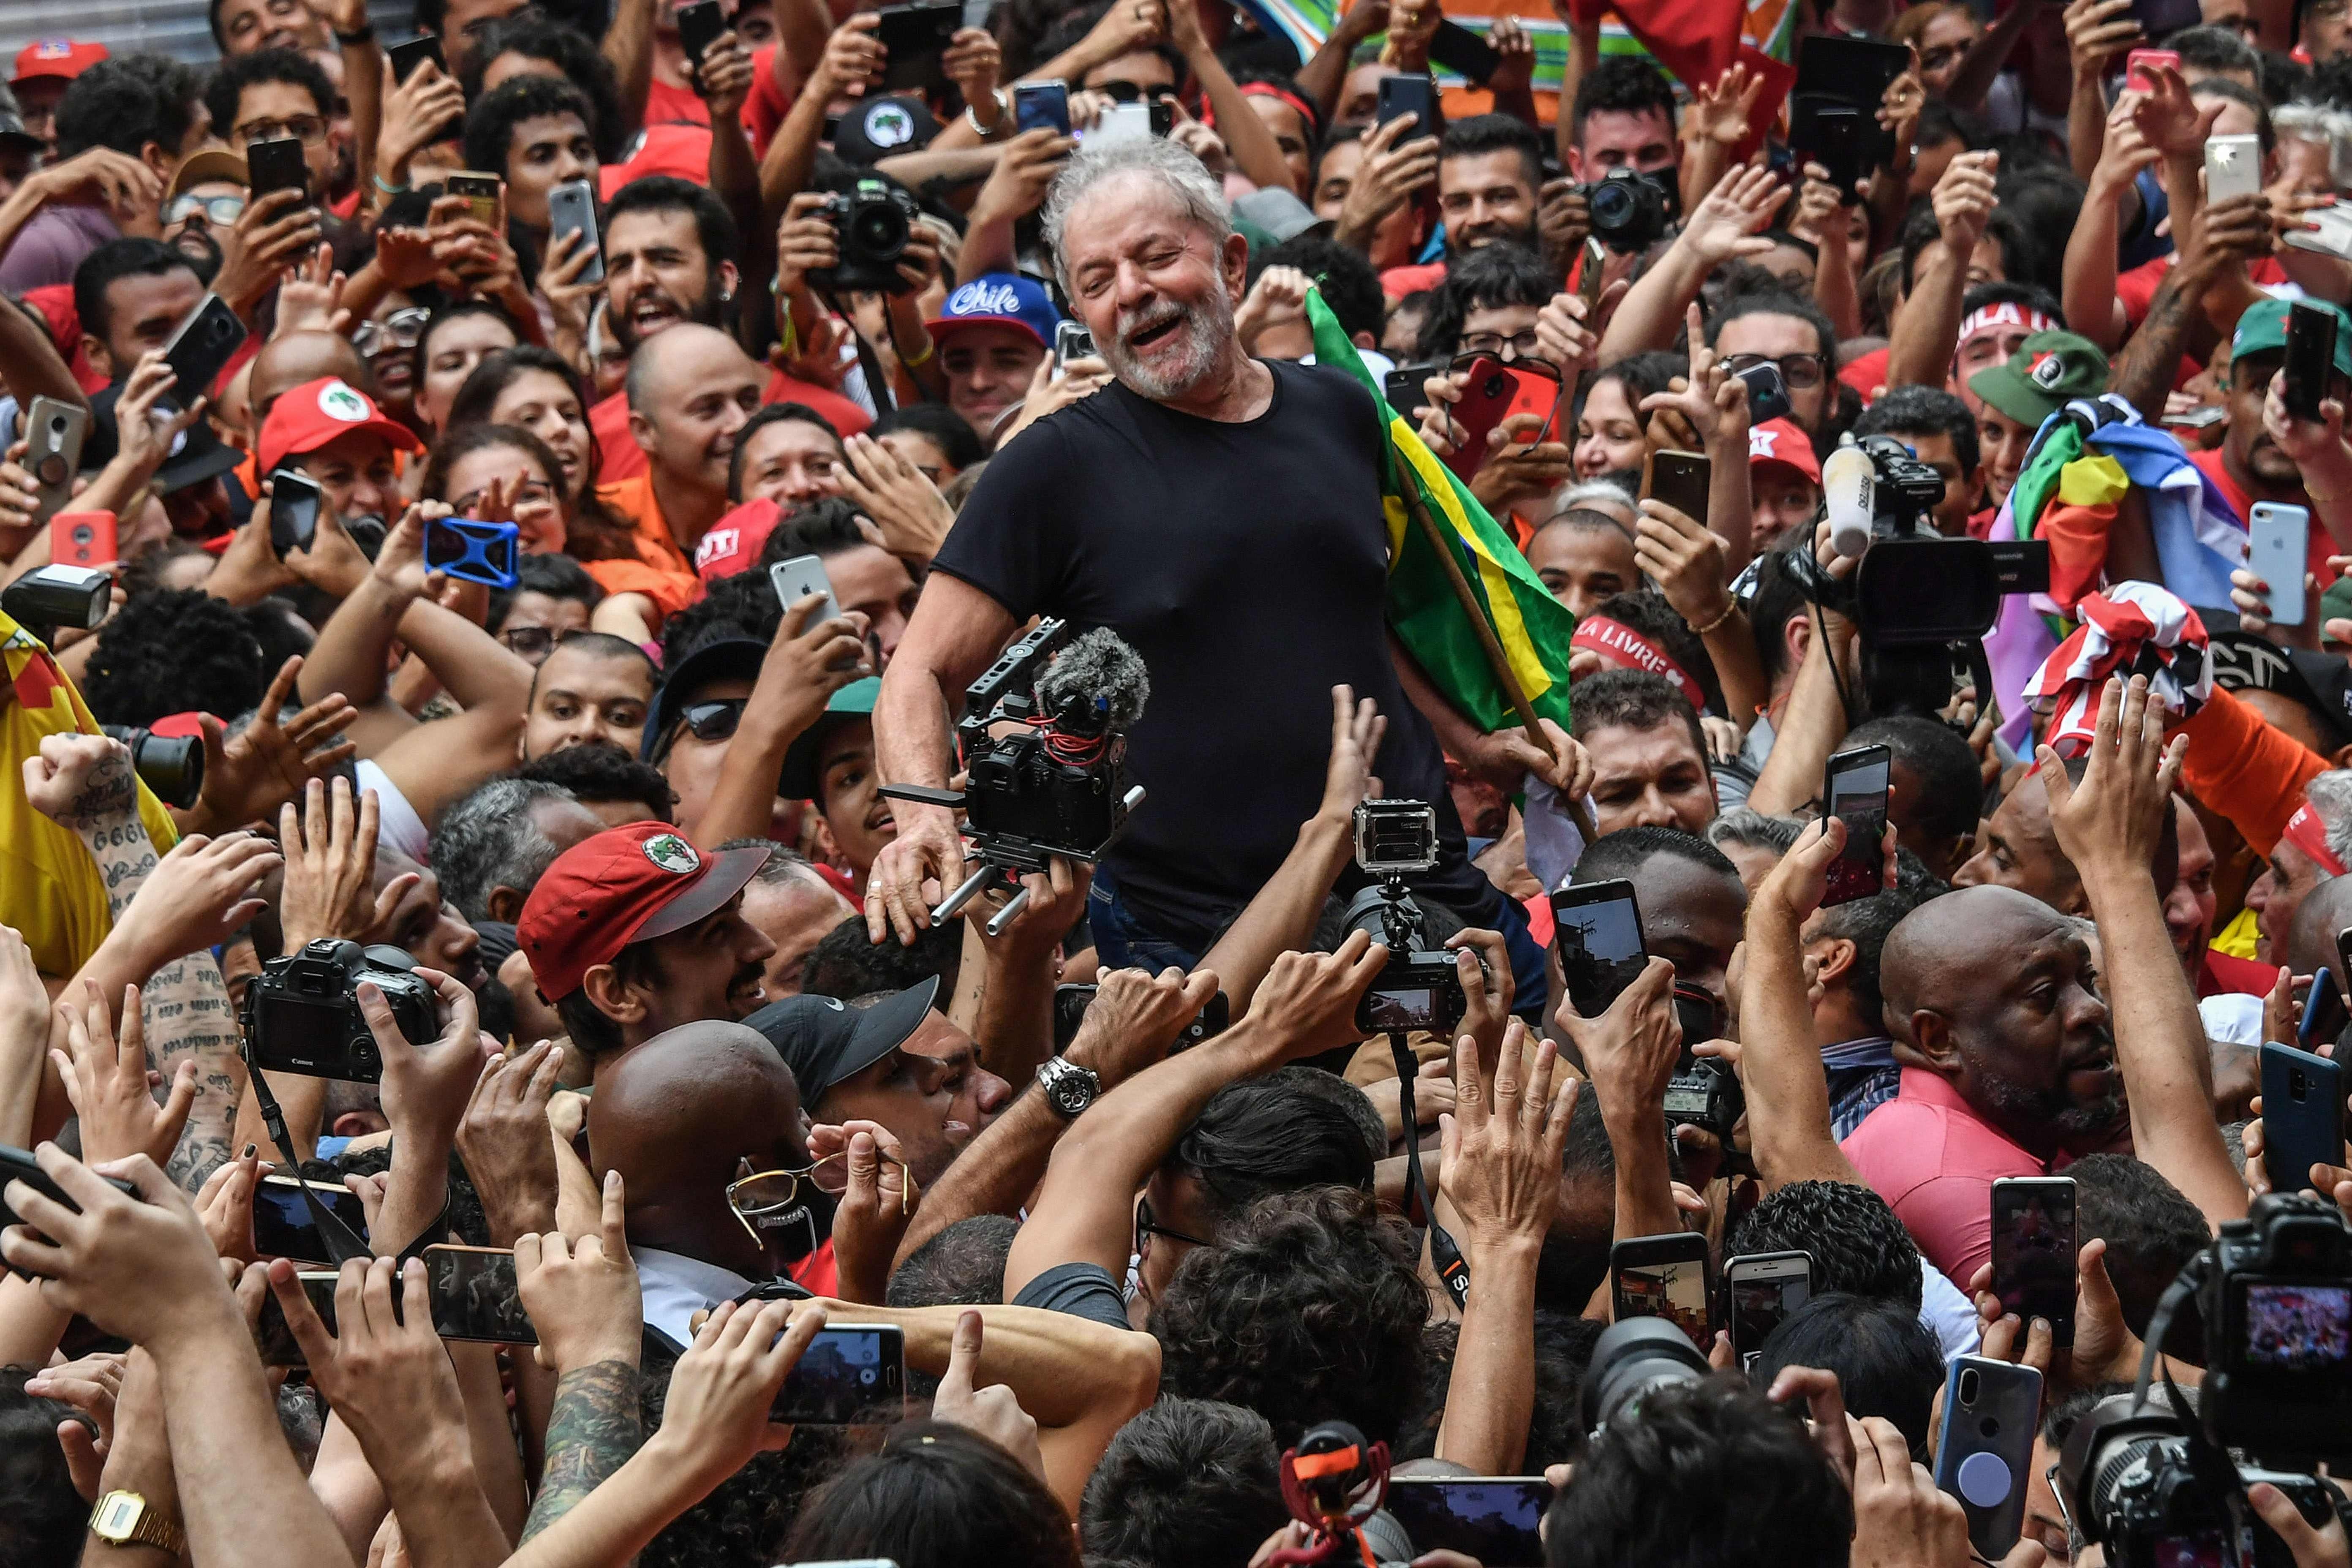 Były prezydent Brazylii (2003-2011) Luiz Inácio Lula da Silva niesiony na rękach po tym, jak wyszedł z więzienia po półtorarocznym pobycie za korupcję, São Paulo, 9 listopada 2019 r.